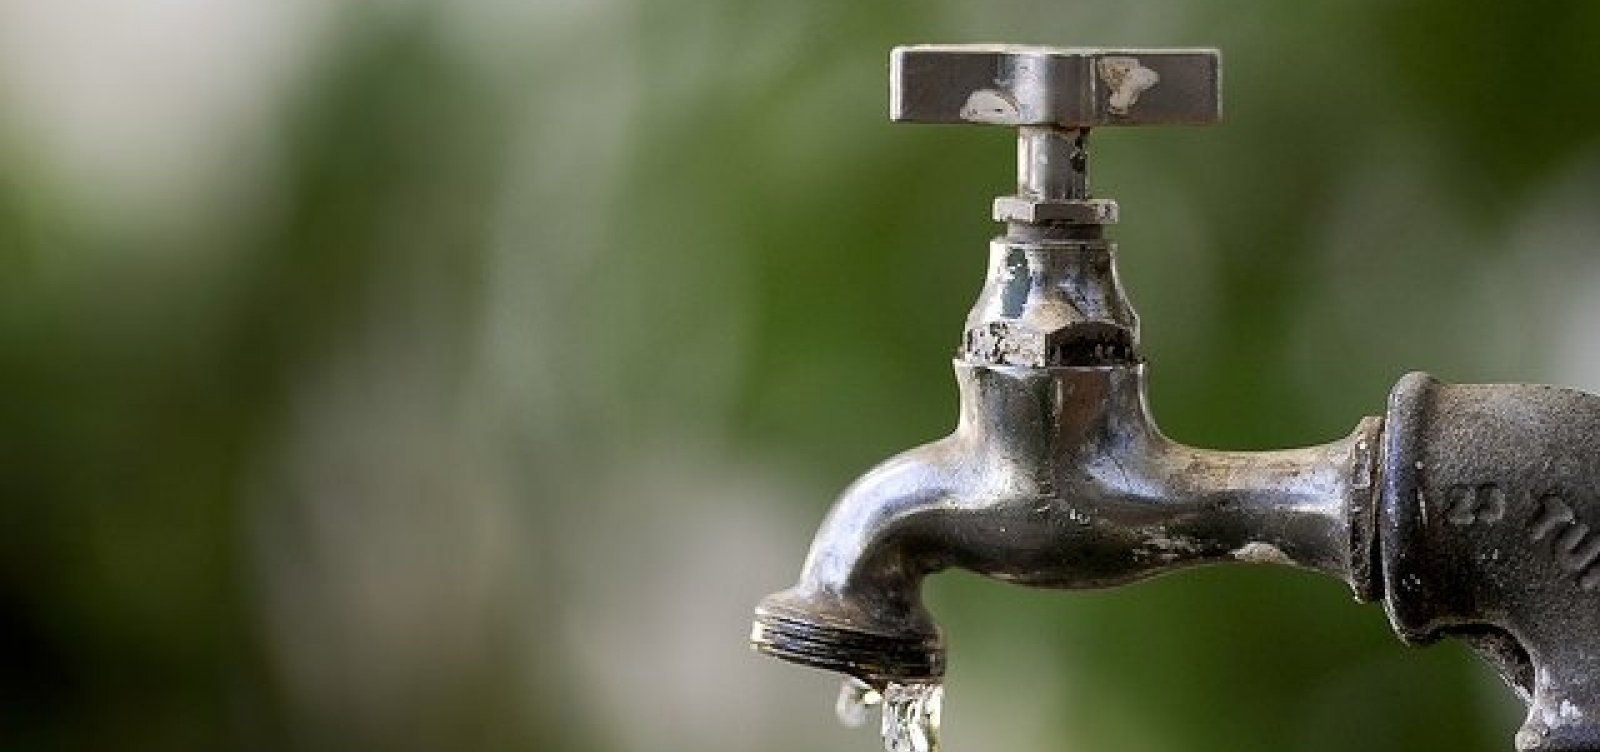 Abastecimento de água é interrompido em Itaparica e localidades de Vera Cruz a partir de segunda